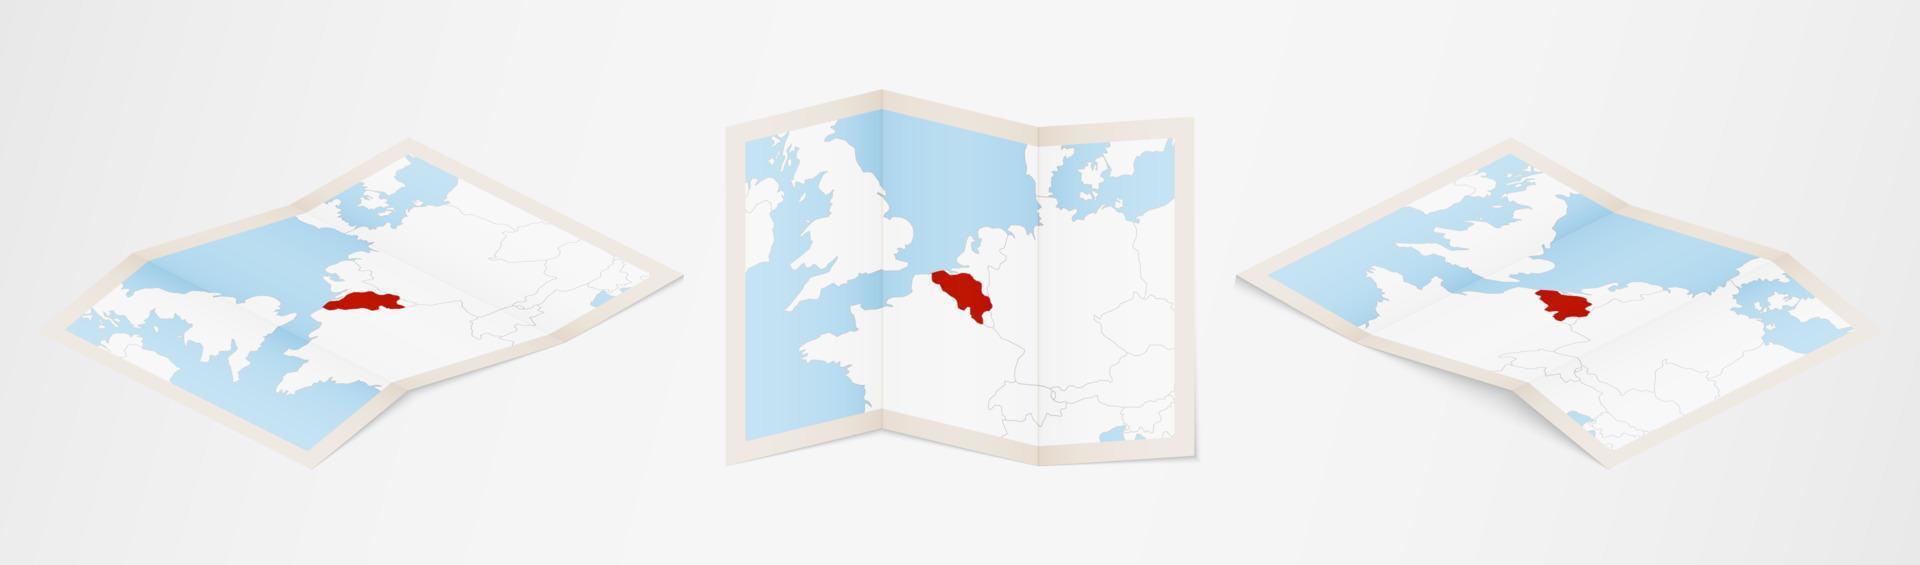 carte pliée de la belgique en trois versions différentes. vecteur